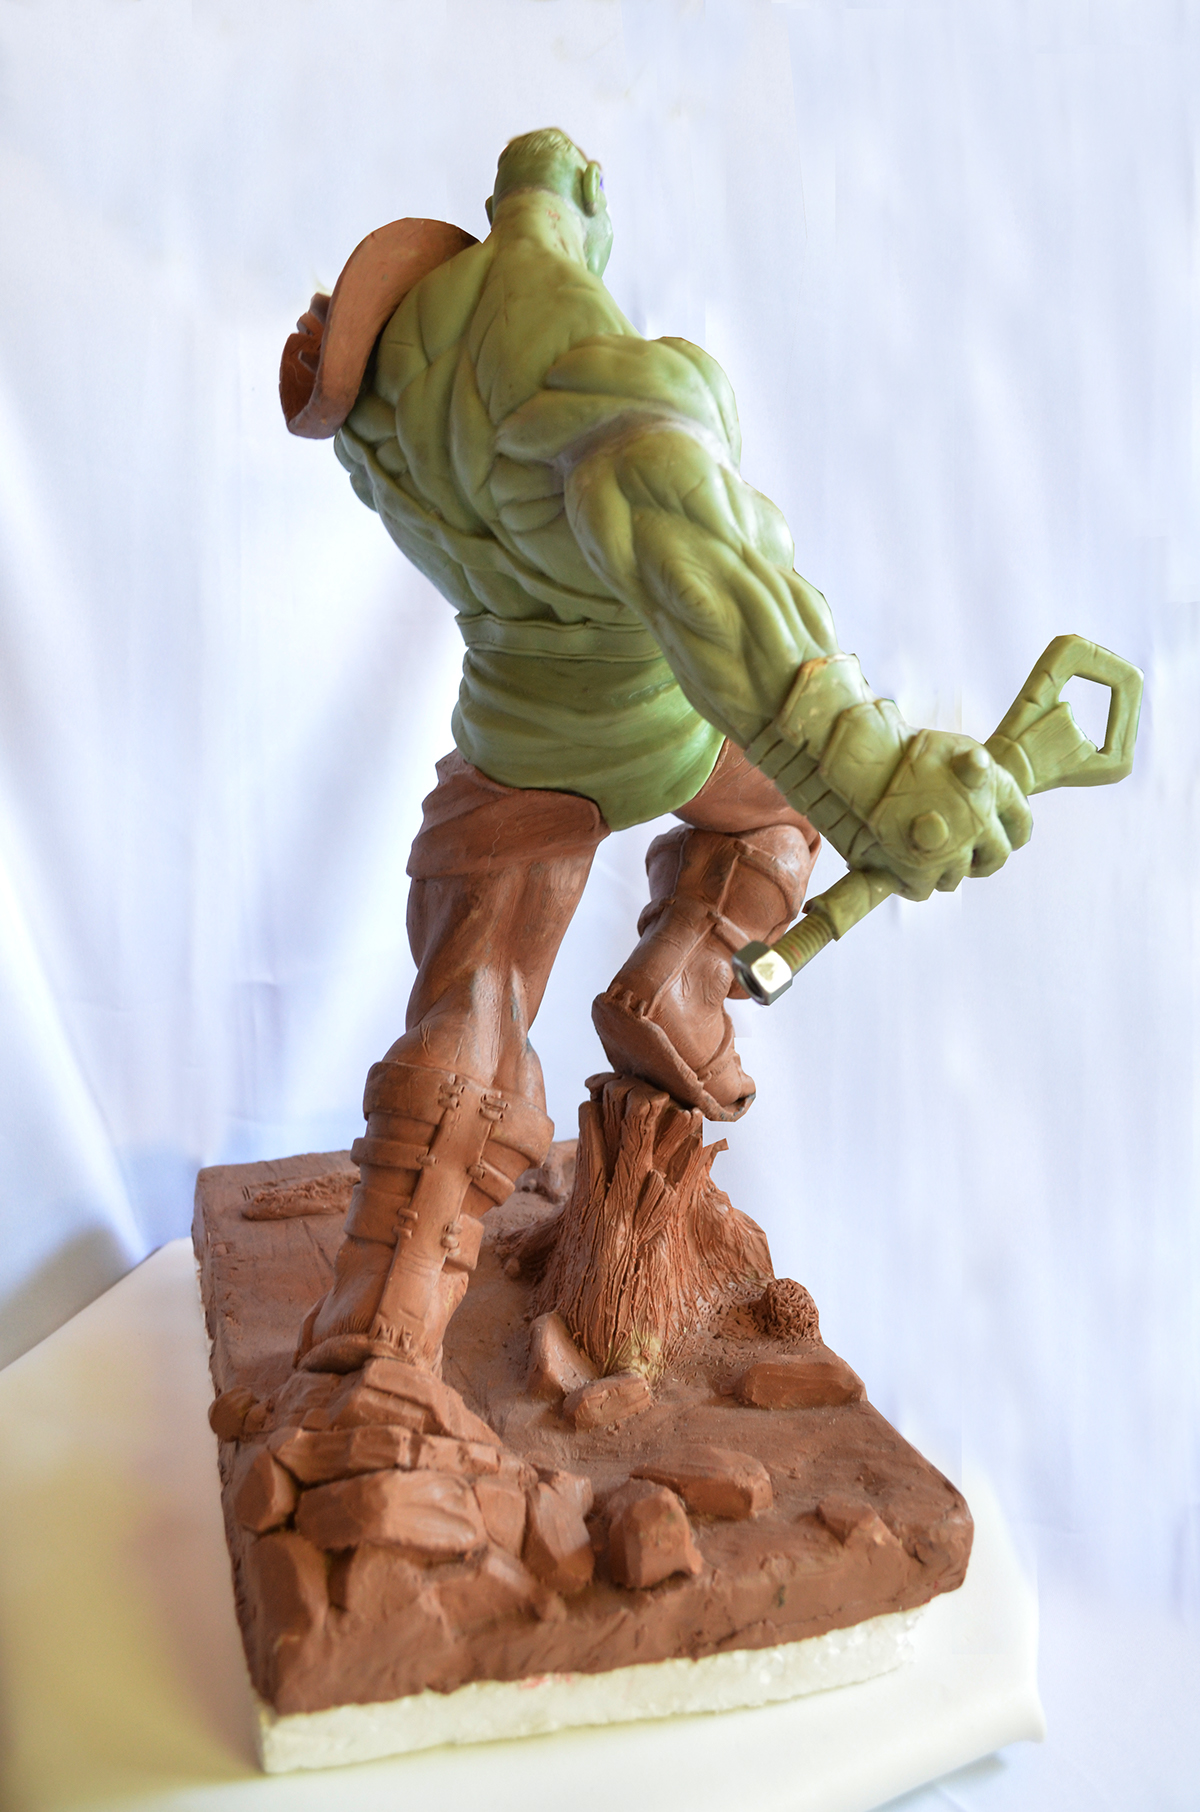 Hulk marvel Gladiator gladiador sculpture escultura clay comics